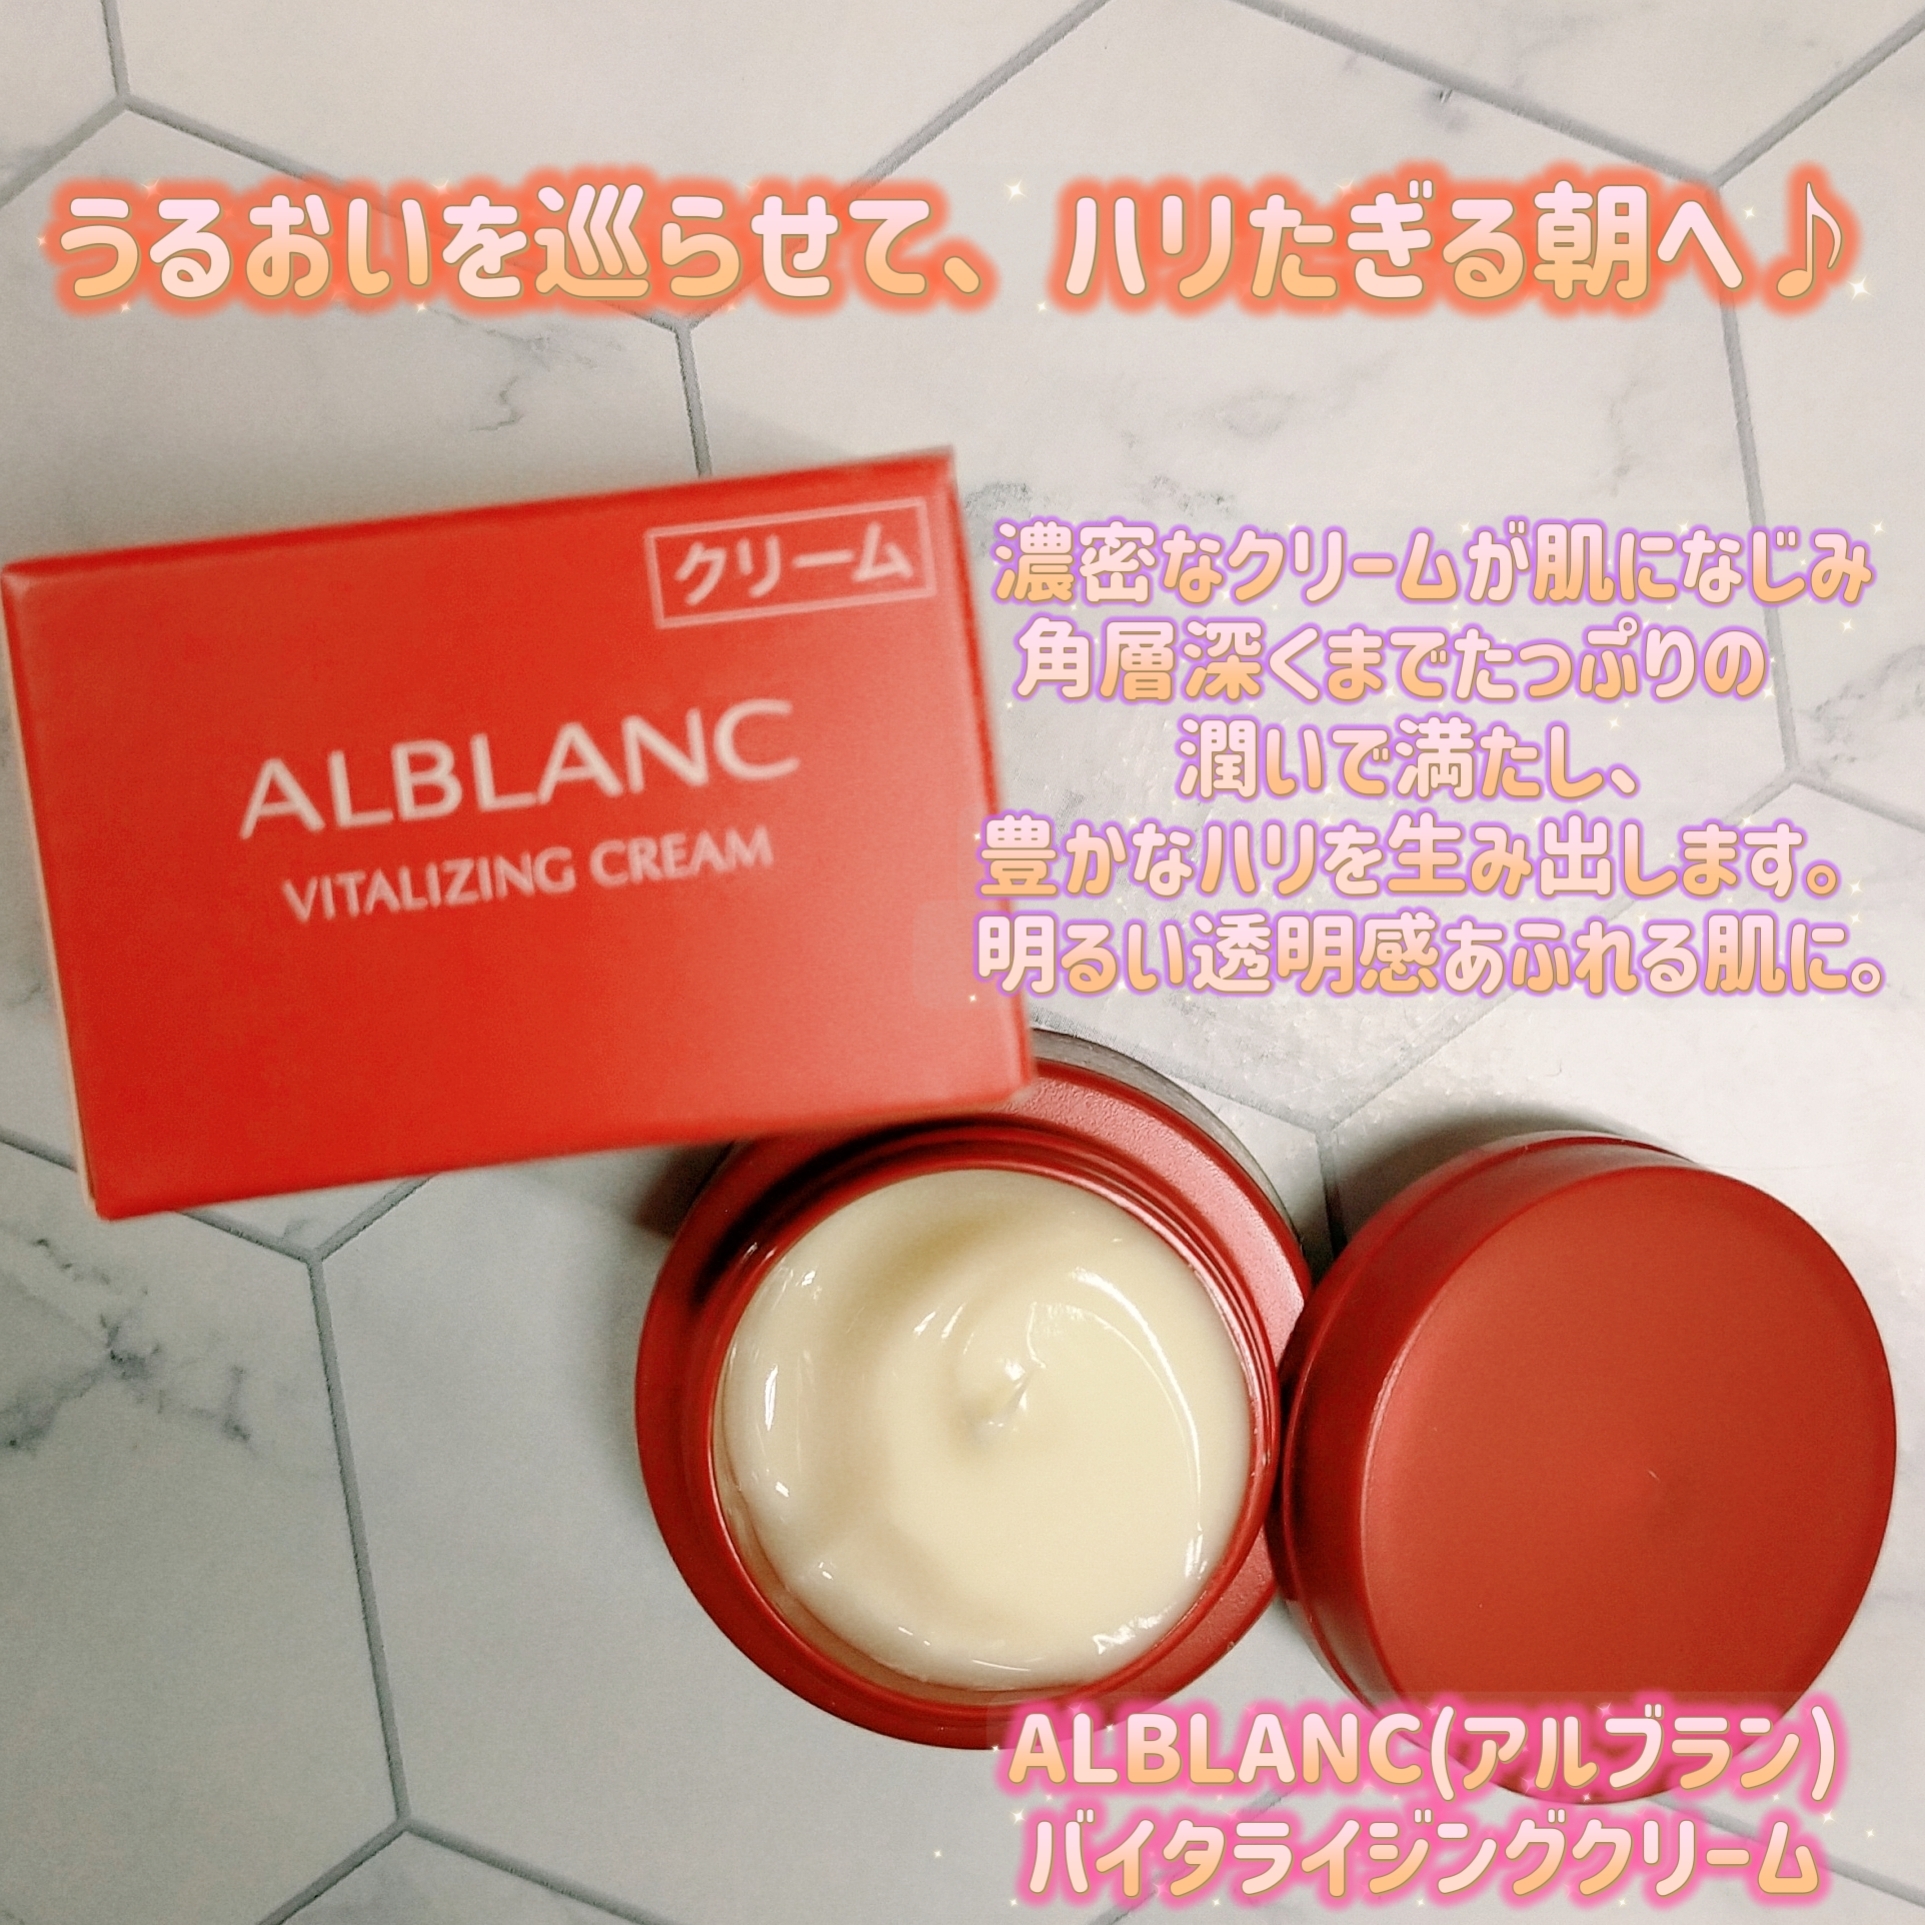 ALBLANC(アルブラン) バイタライジングクリームの良い点・メリットに関するみこさんの口コミ画像1